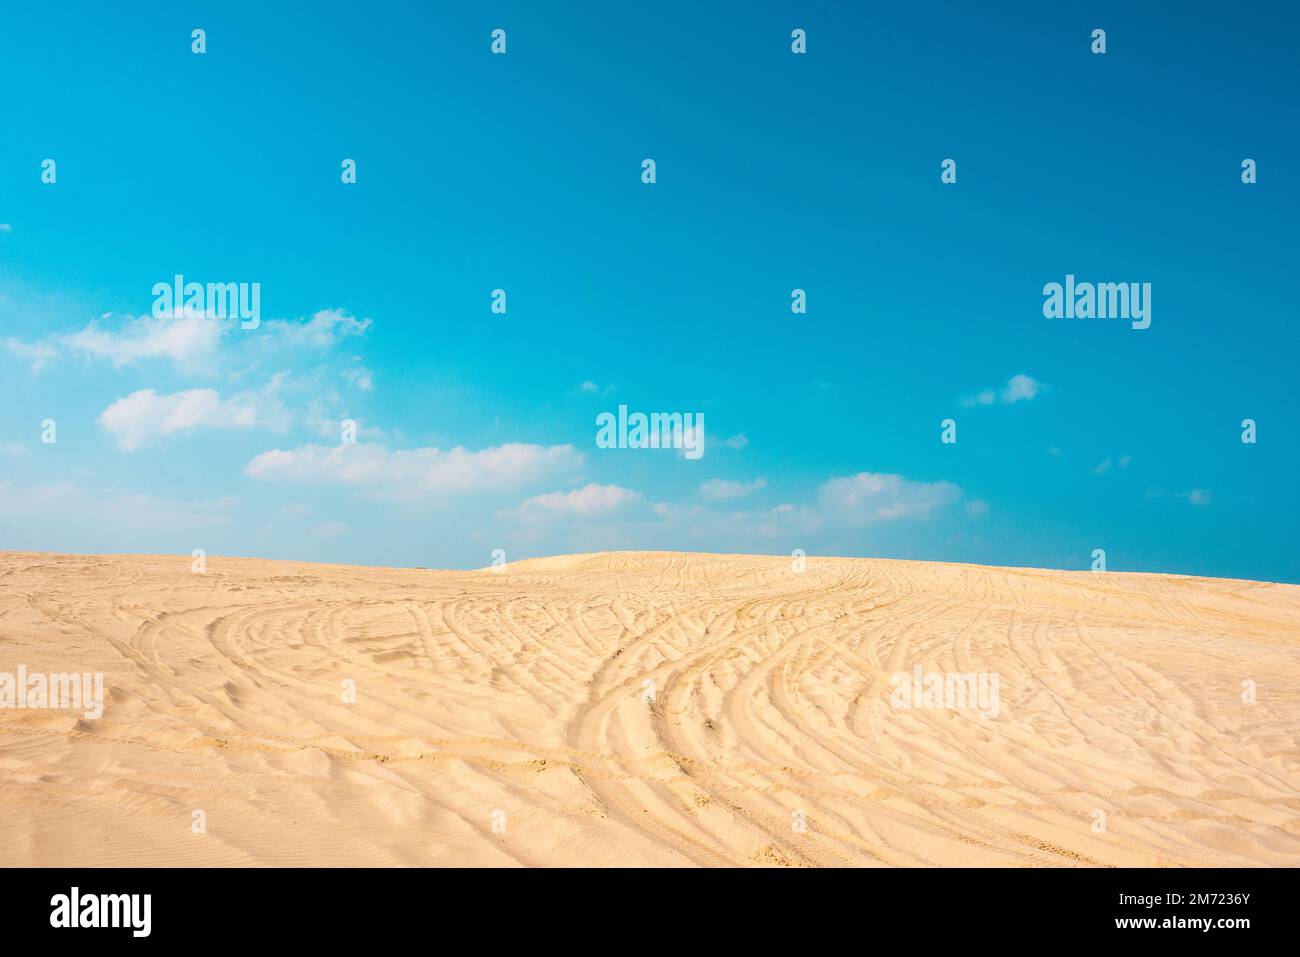 Plage de dunes d'or dans la ville de madero tamaulipas, montagne de sable avec des marques de véhicule et ciel bleu, pas de personnes Banque D'Images